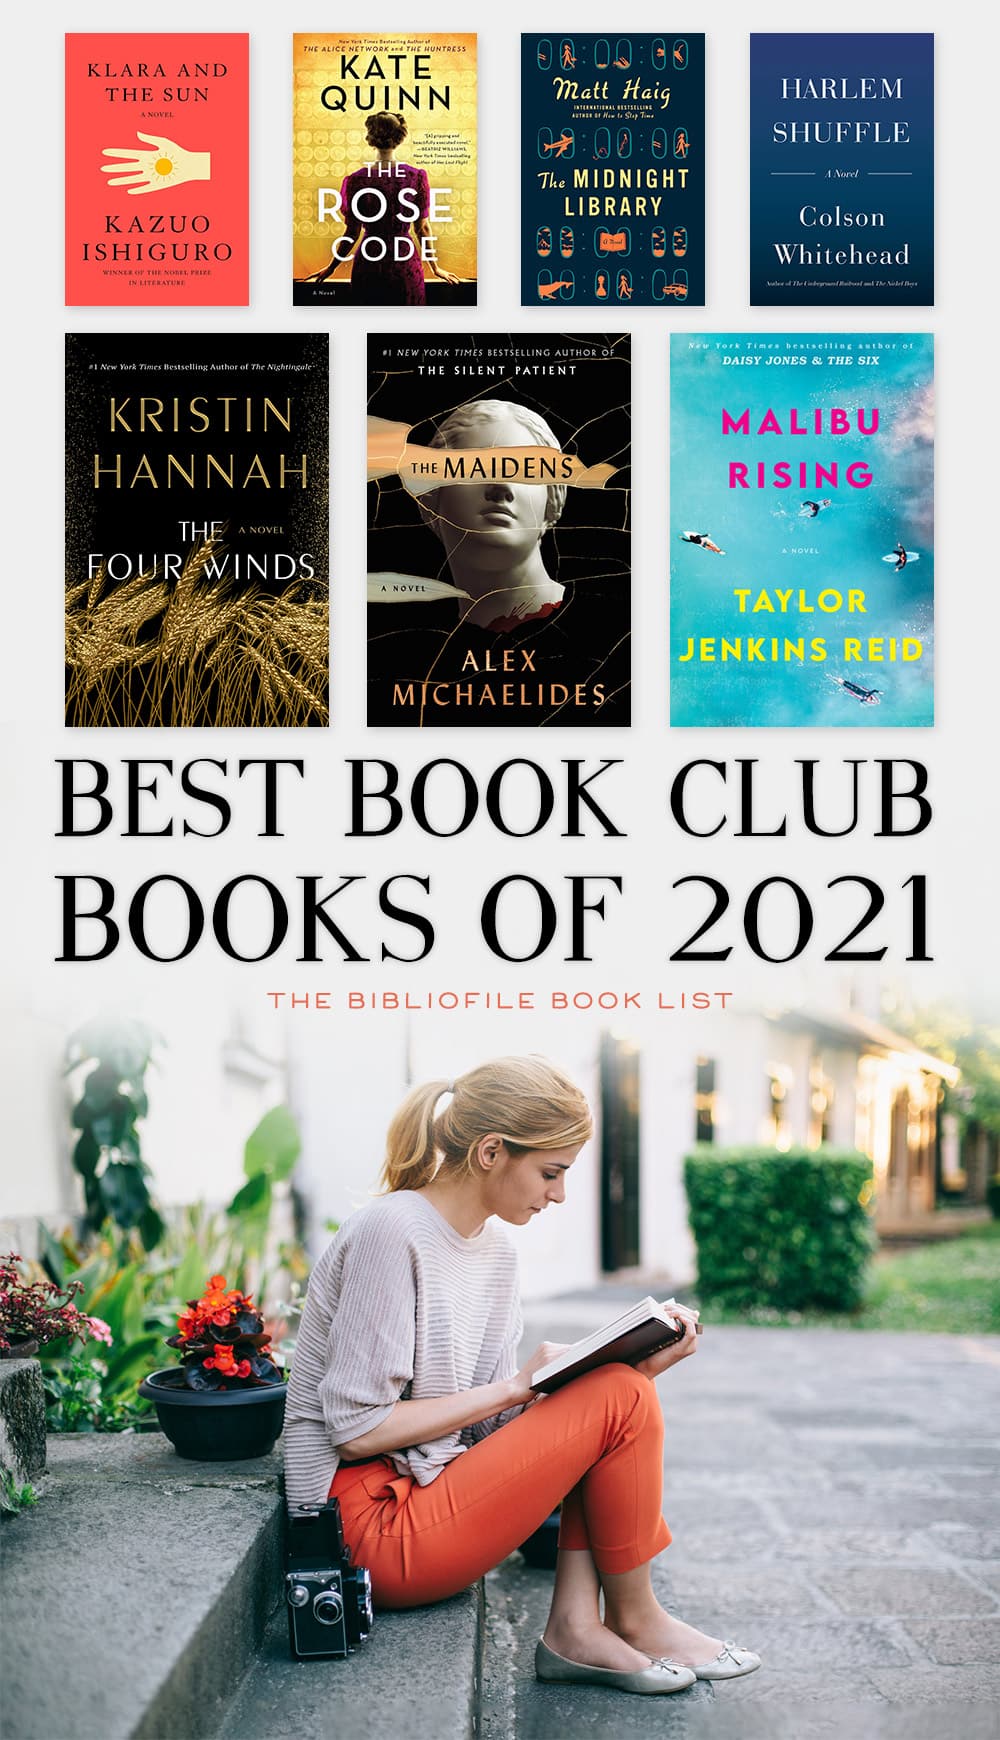 20 Best Book Club Books of 2021 The Bibliofile